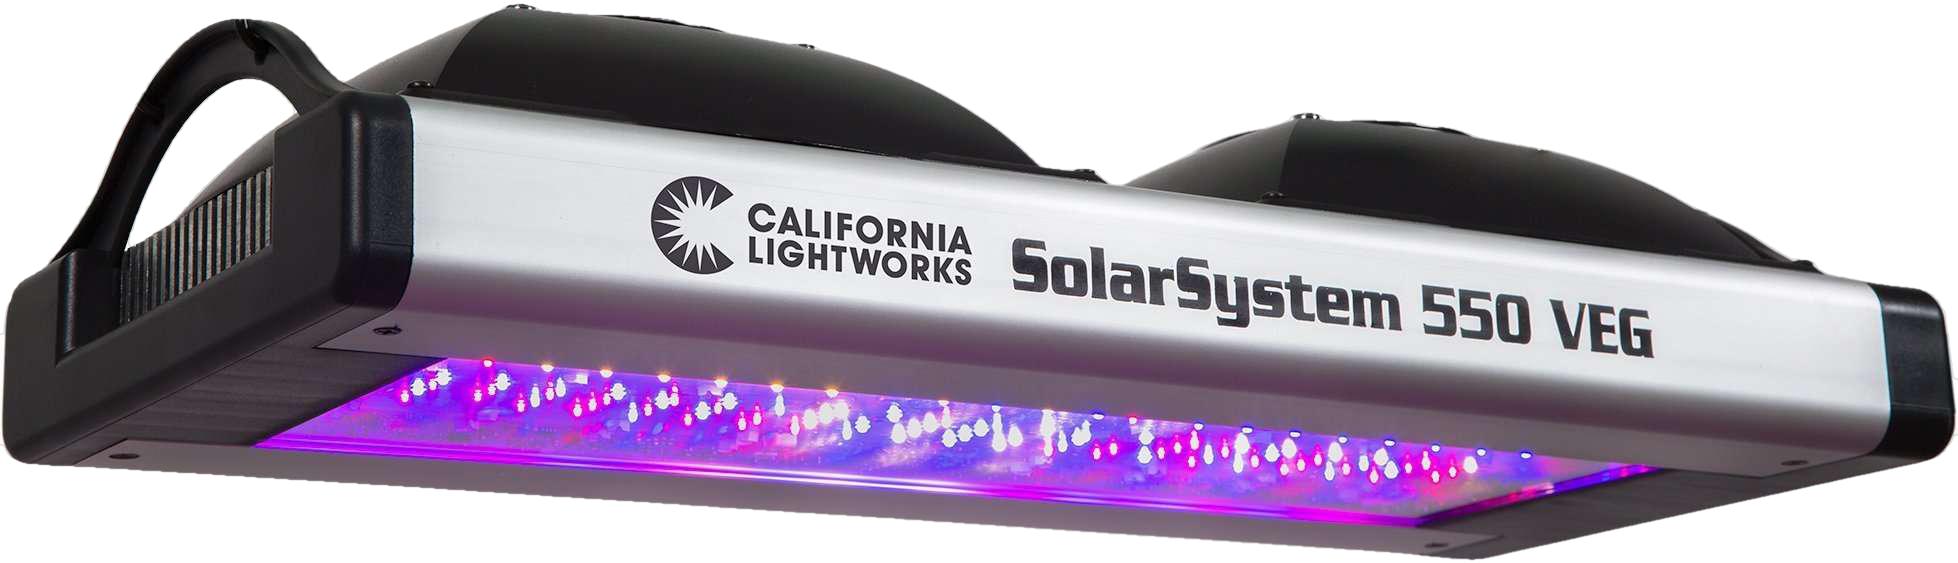 California LightWorks, California Lightworks SolarSystem SS550VEG 550 LED Grow Light Vegetative Spectrum New